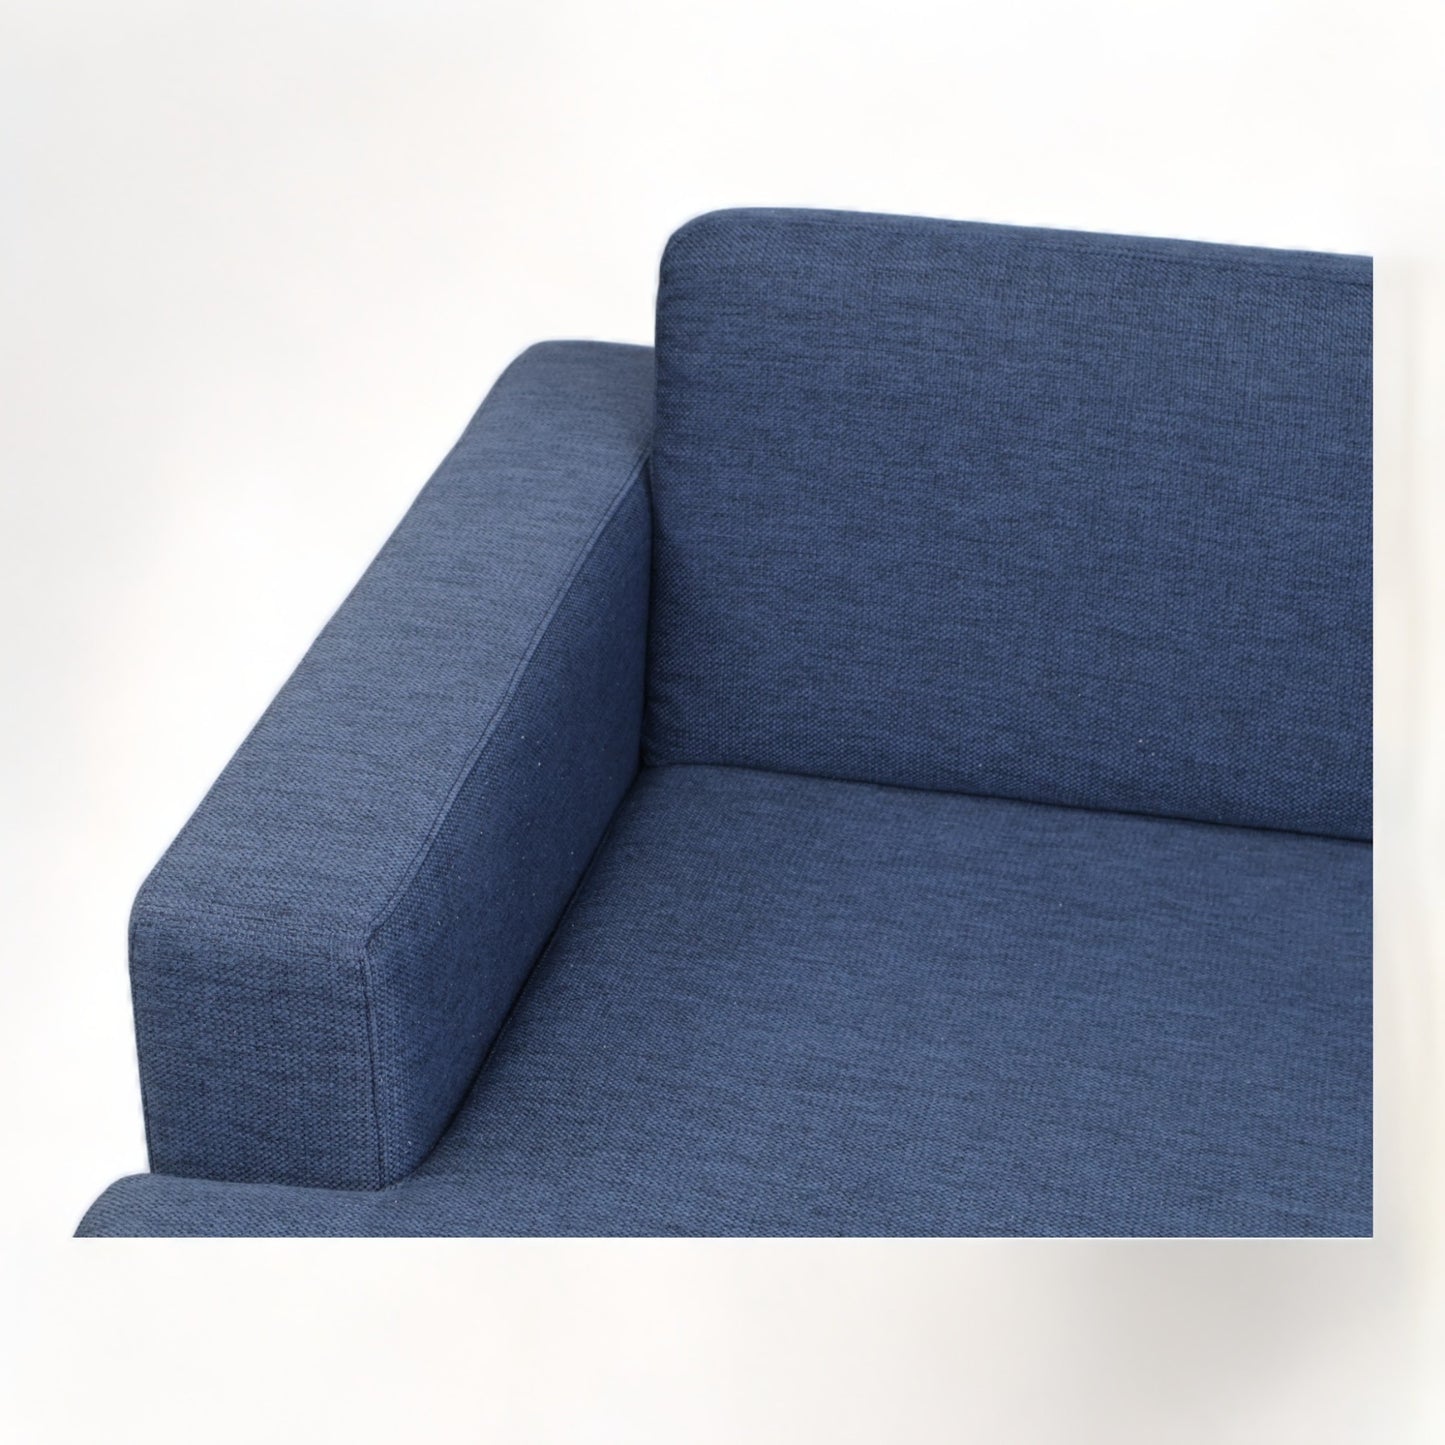 Nyrenset | Mørk blå Bolia Scandinavia sofa med sjeselong